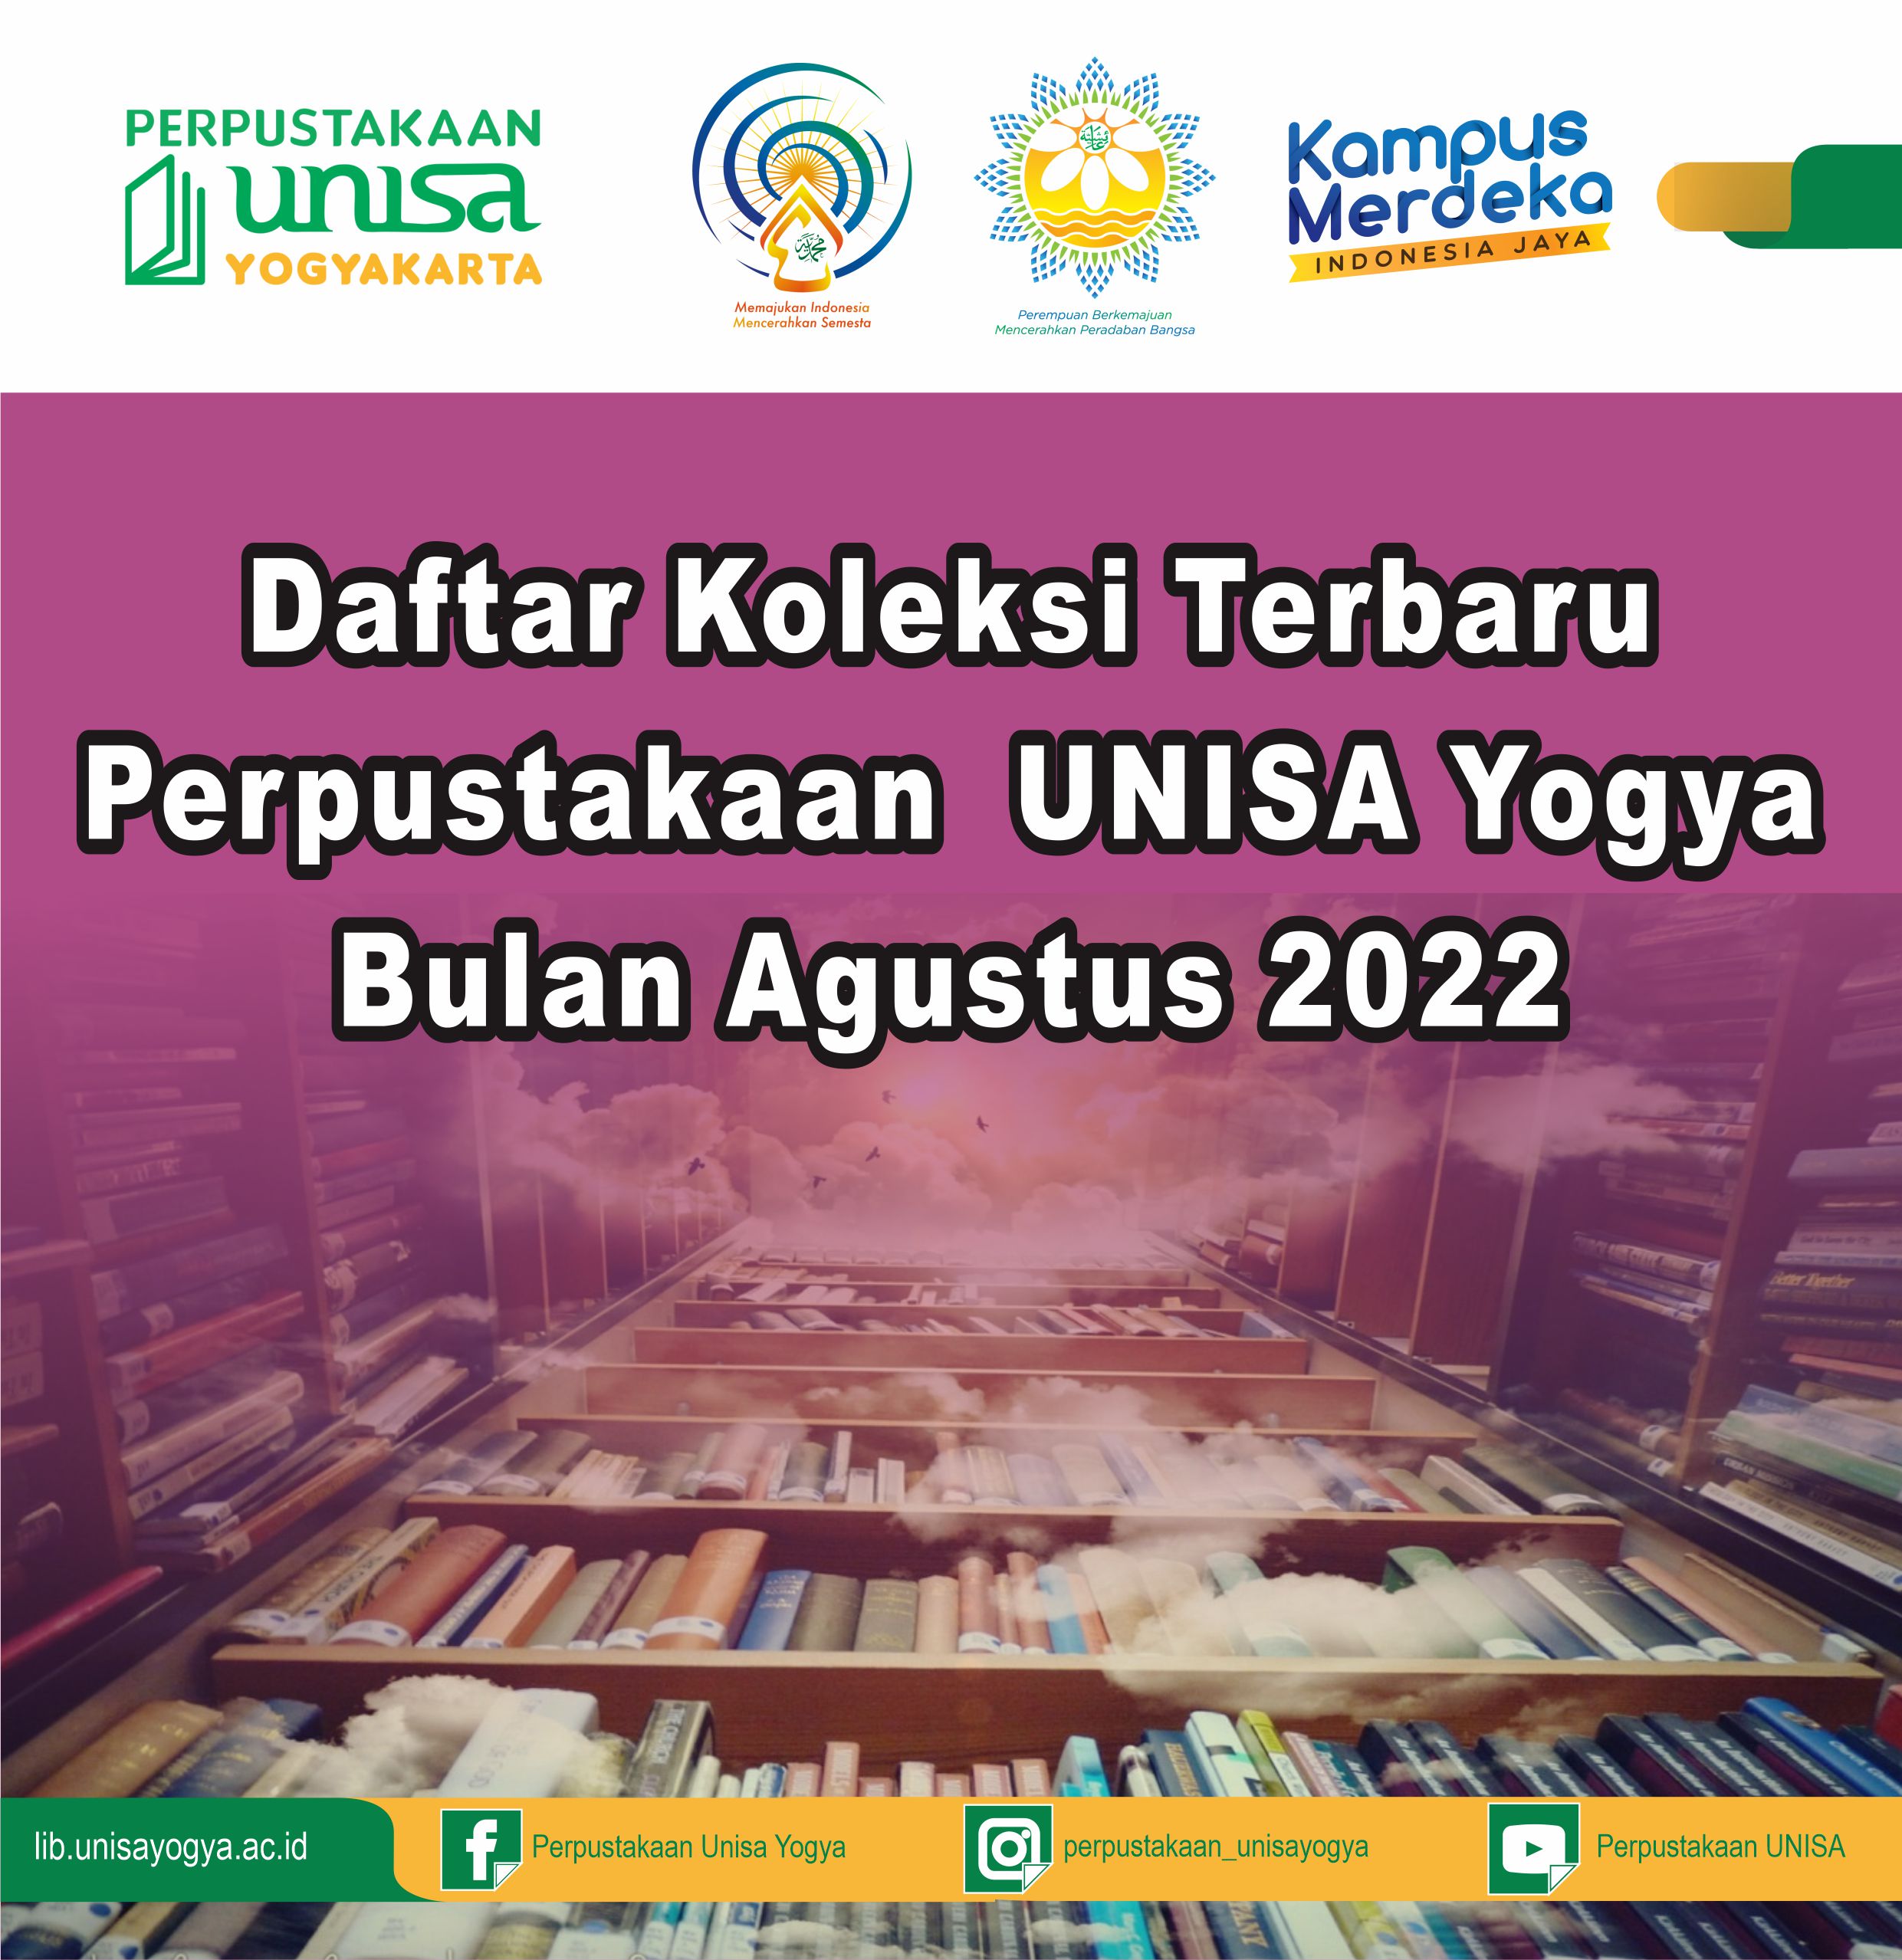 Daftar Koleksi Terbaru Perpustakaan UNISA Yogya Bulan Agustus 2022